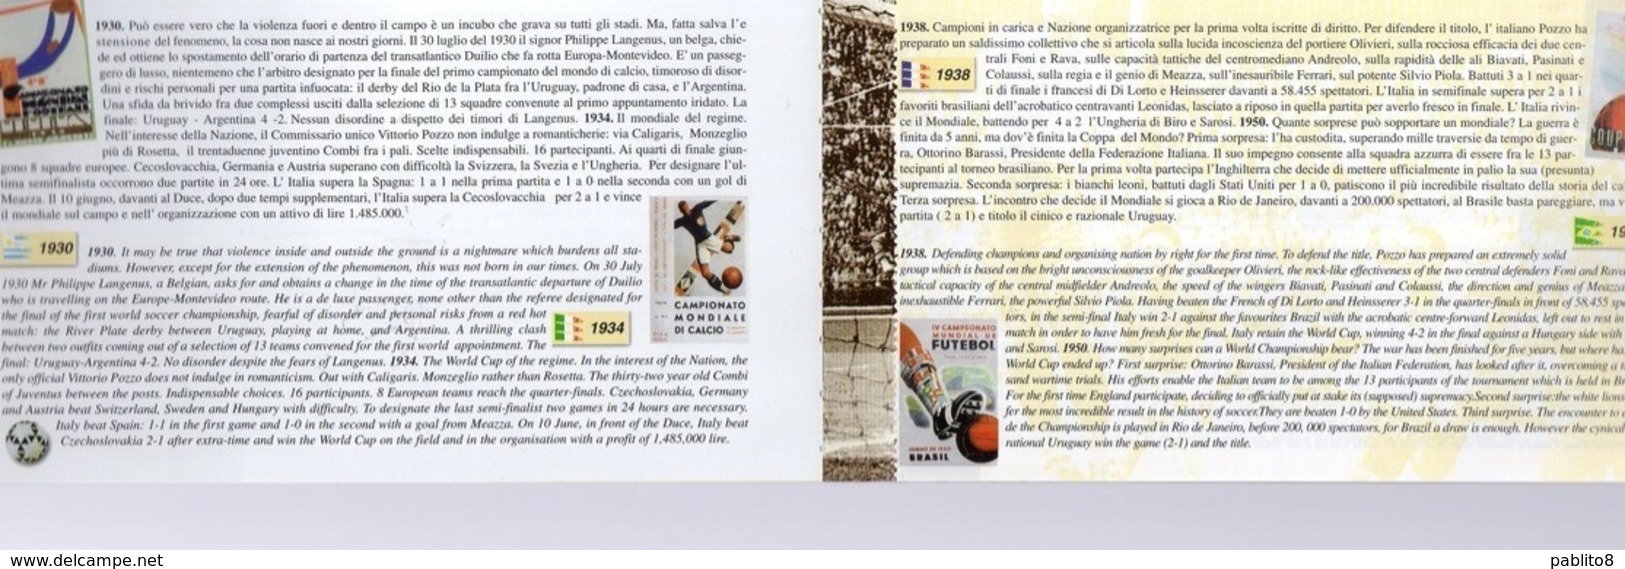 REPUBBLICA DI SAN MARINO 1998 COPPA DEL MONDO DI CALCIO WORLD CUP FRANCE 98 LIBRETTO SENZA FRANCOBOLLI BOOKLET NO STAMPS - Postzegelboekjes